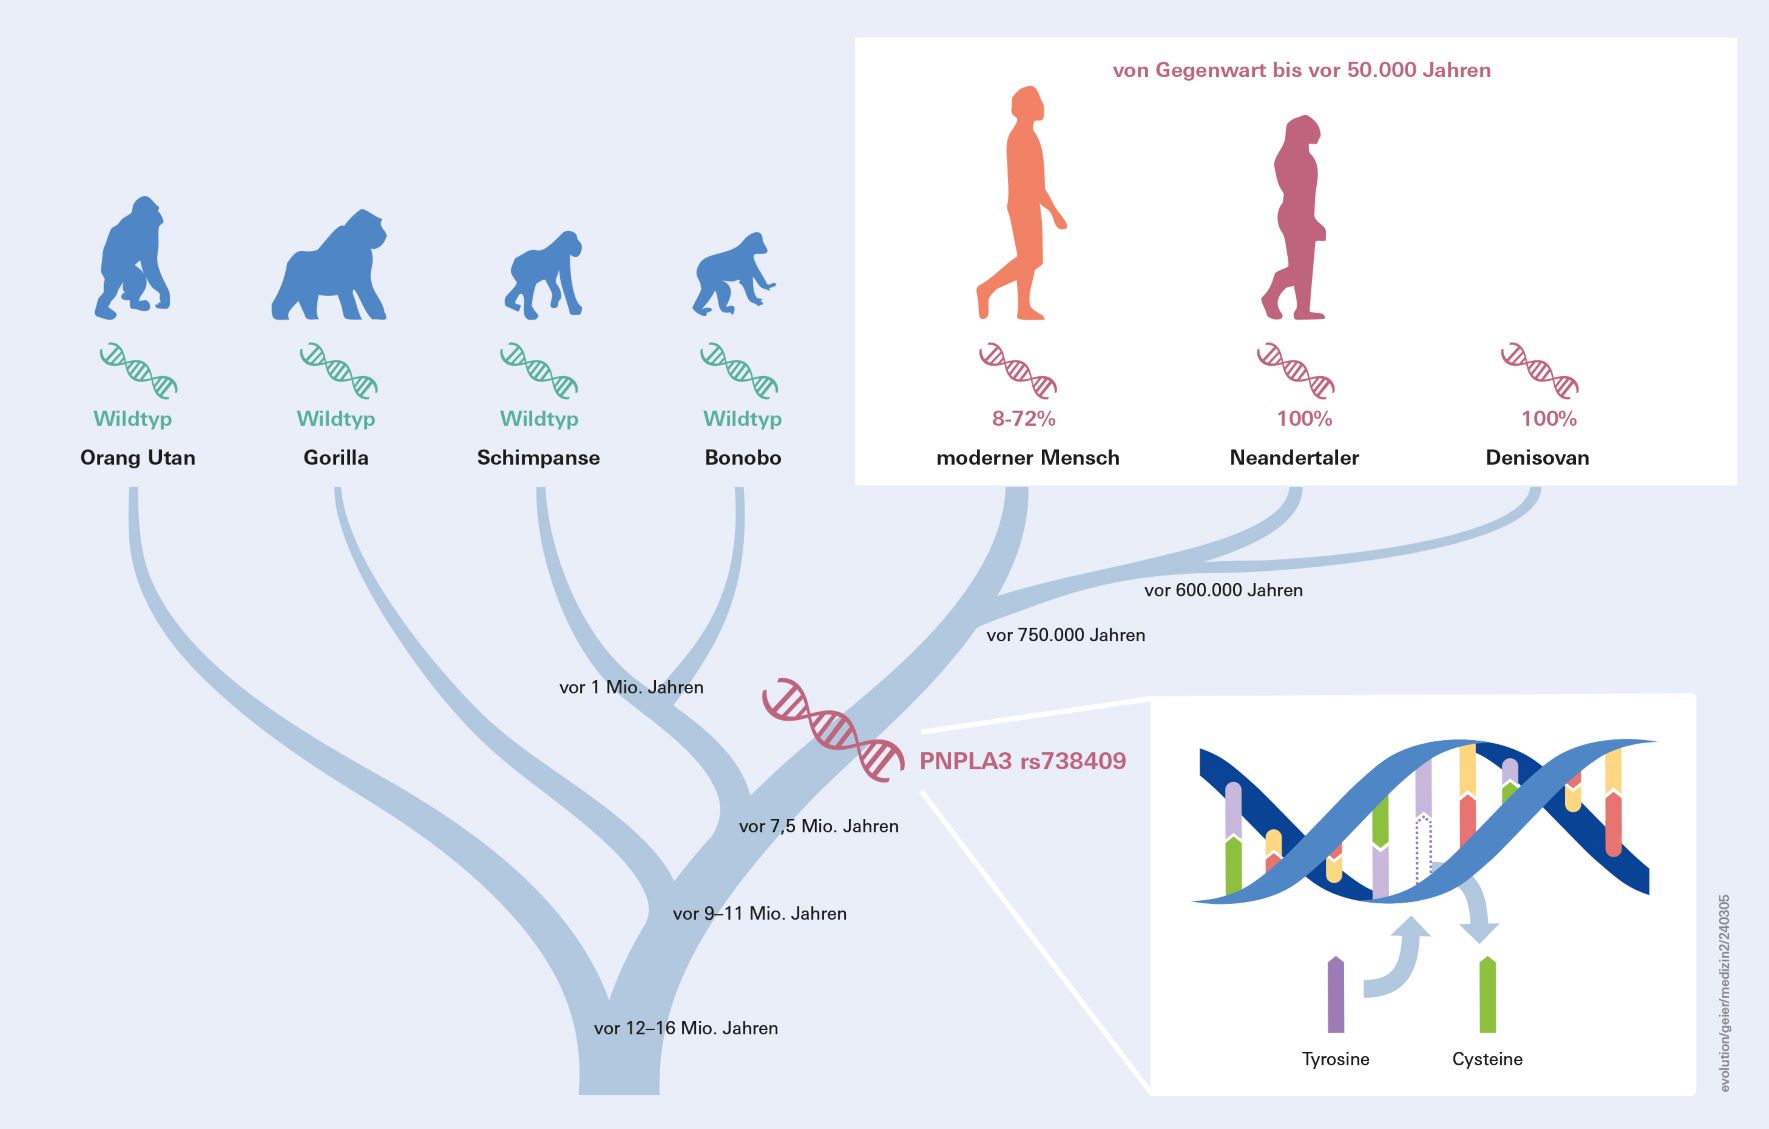 Grafik zur Evolution und Verbreitung der Fettleber-Genvariante